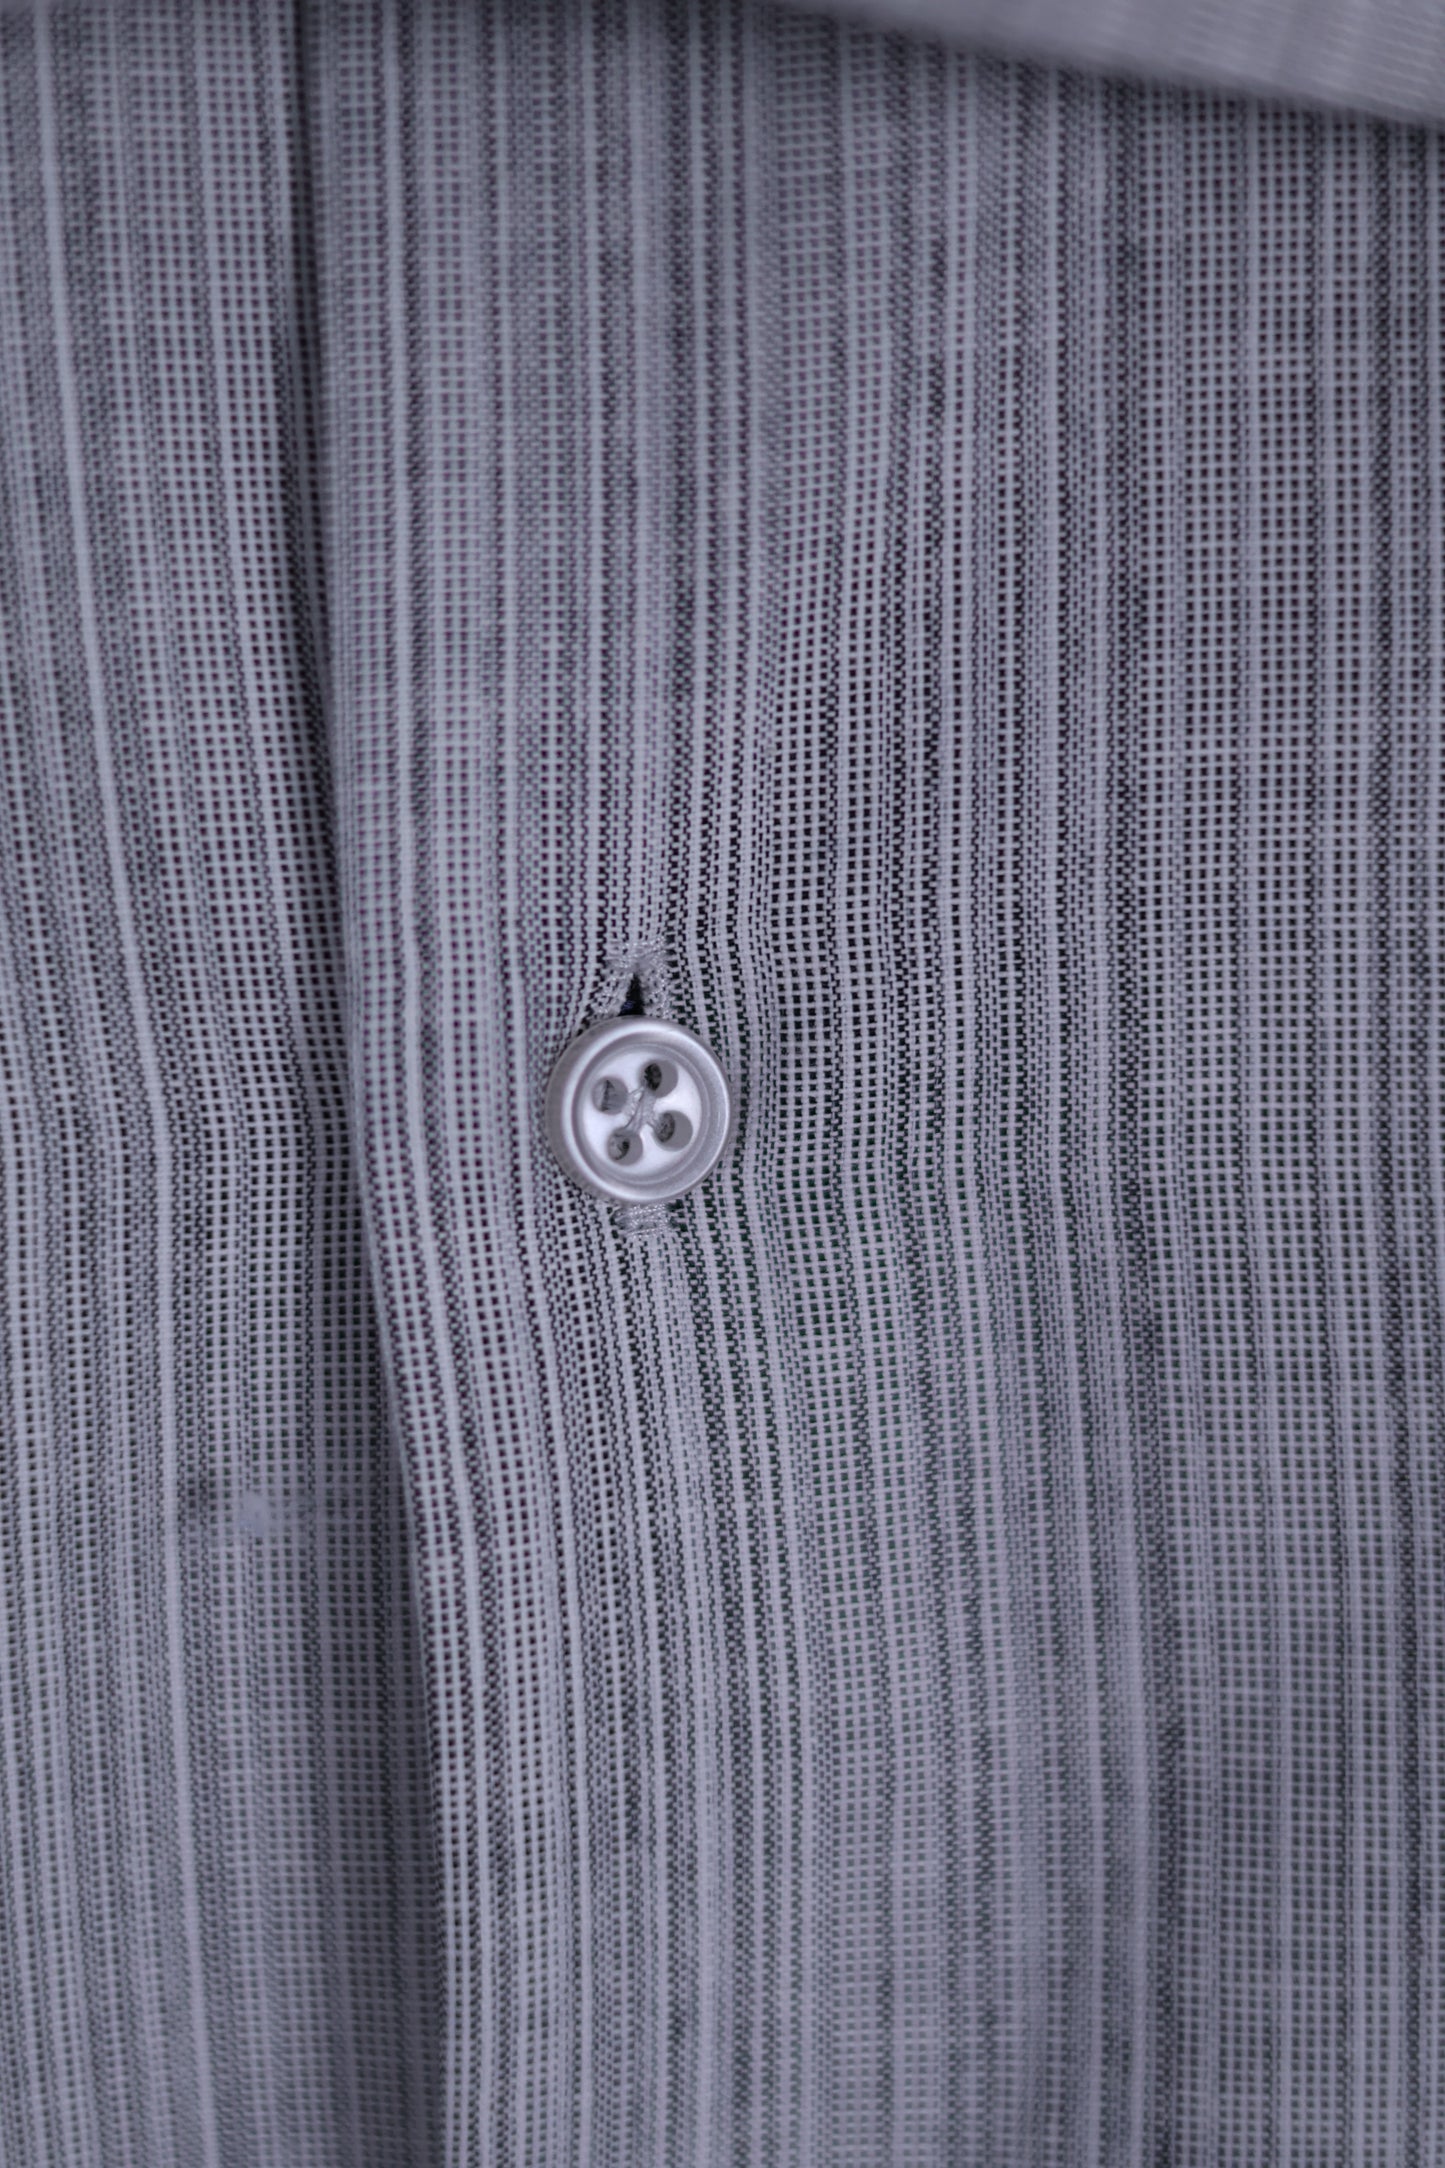 Light Grey Button Up Dress Shirt